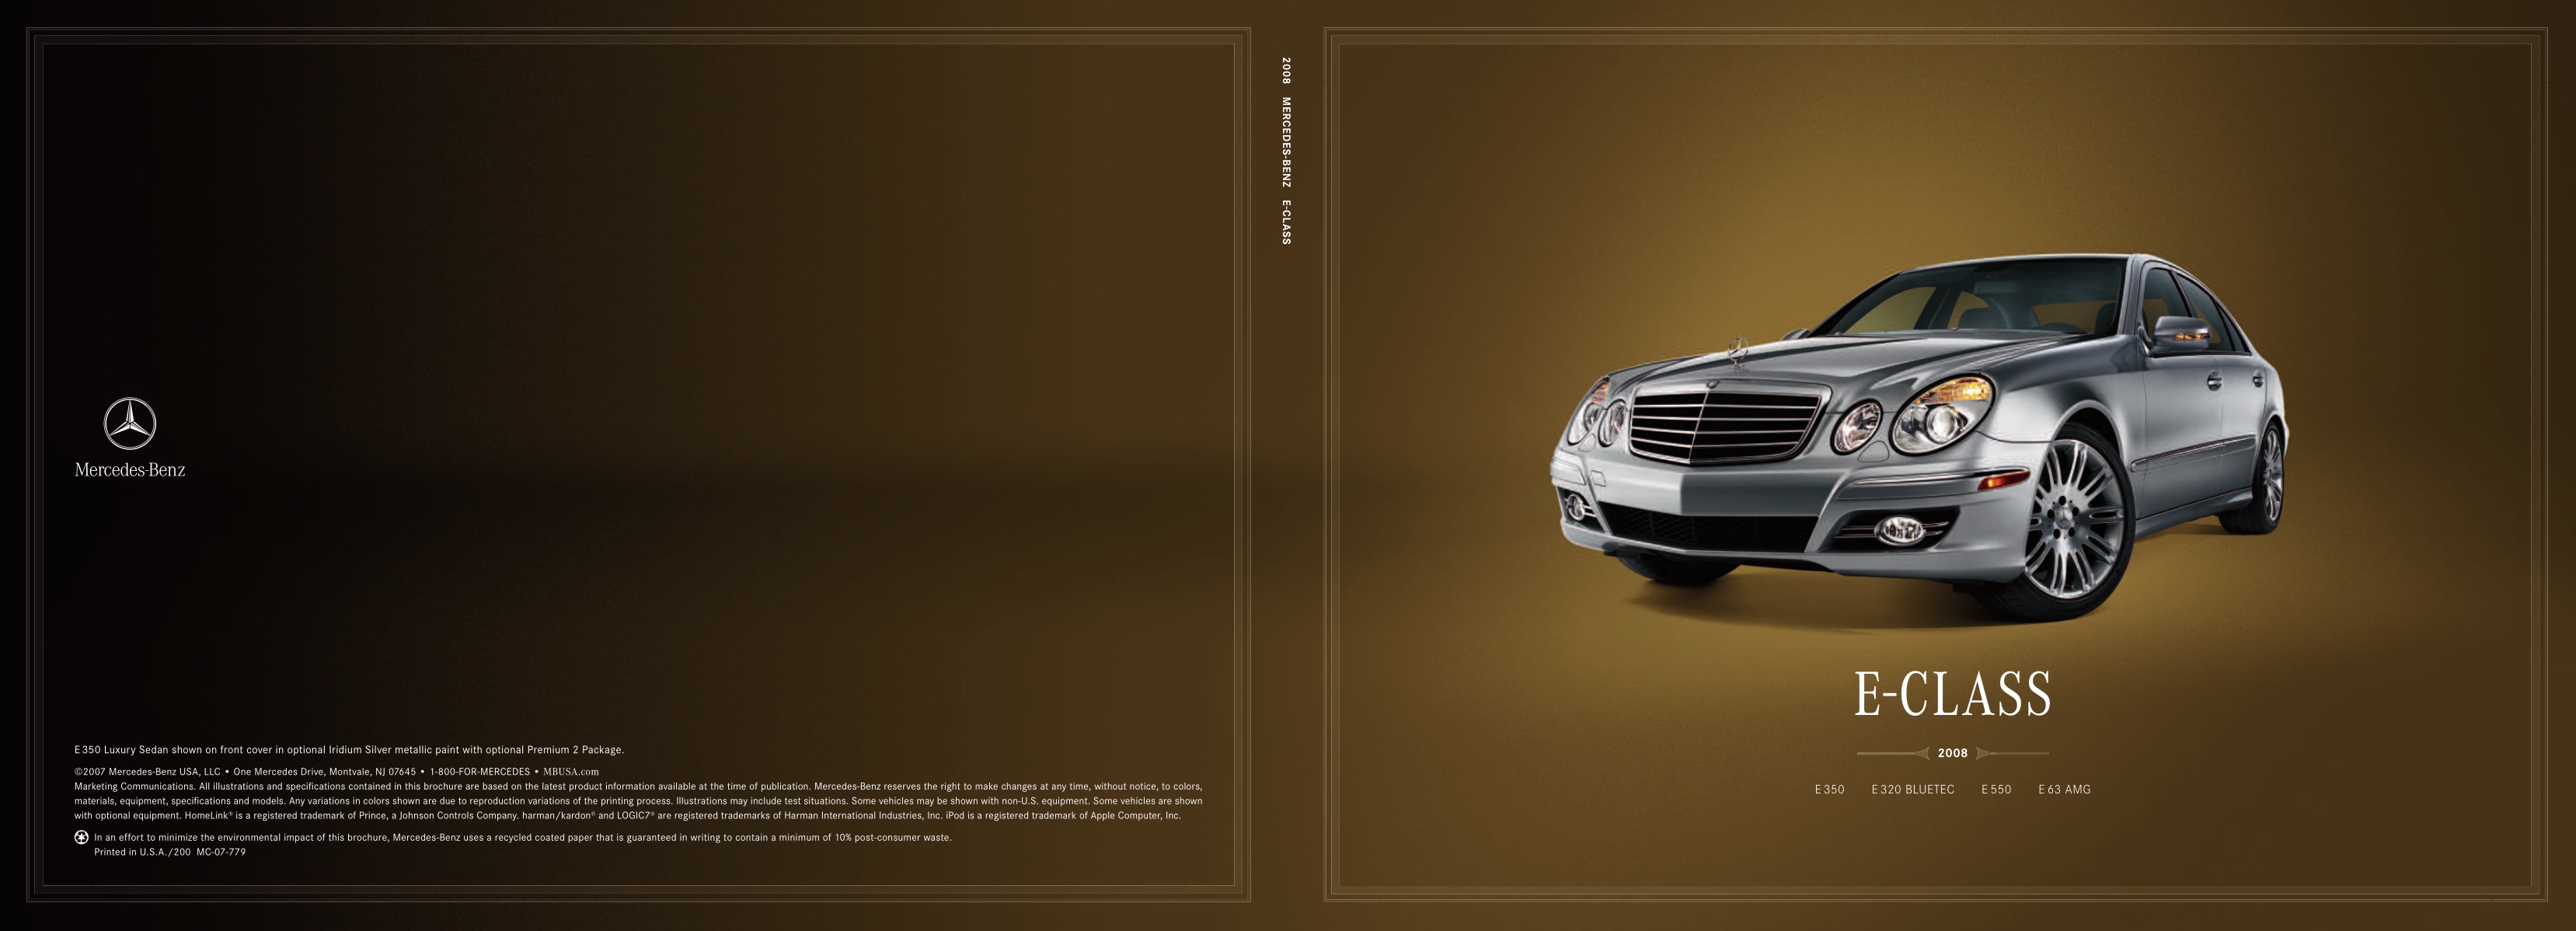 2008 Mercedes-Benz E-Class Brochure